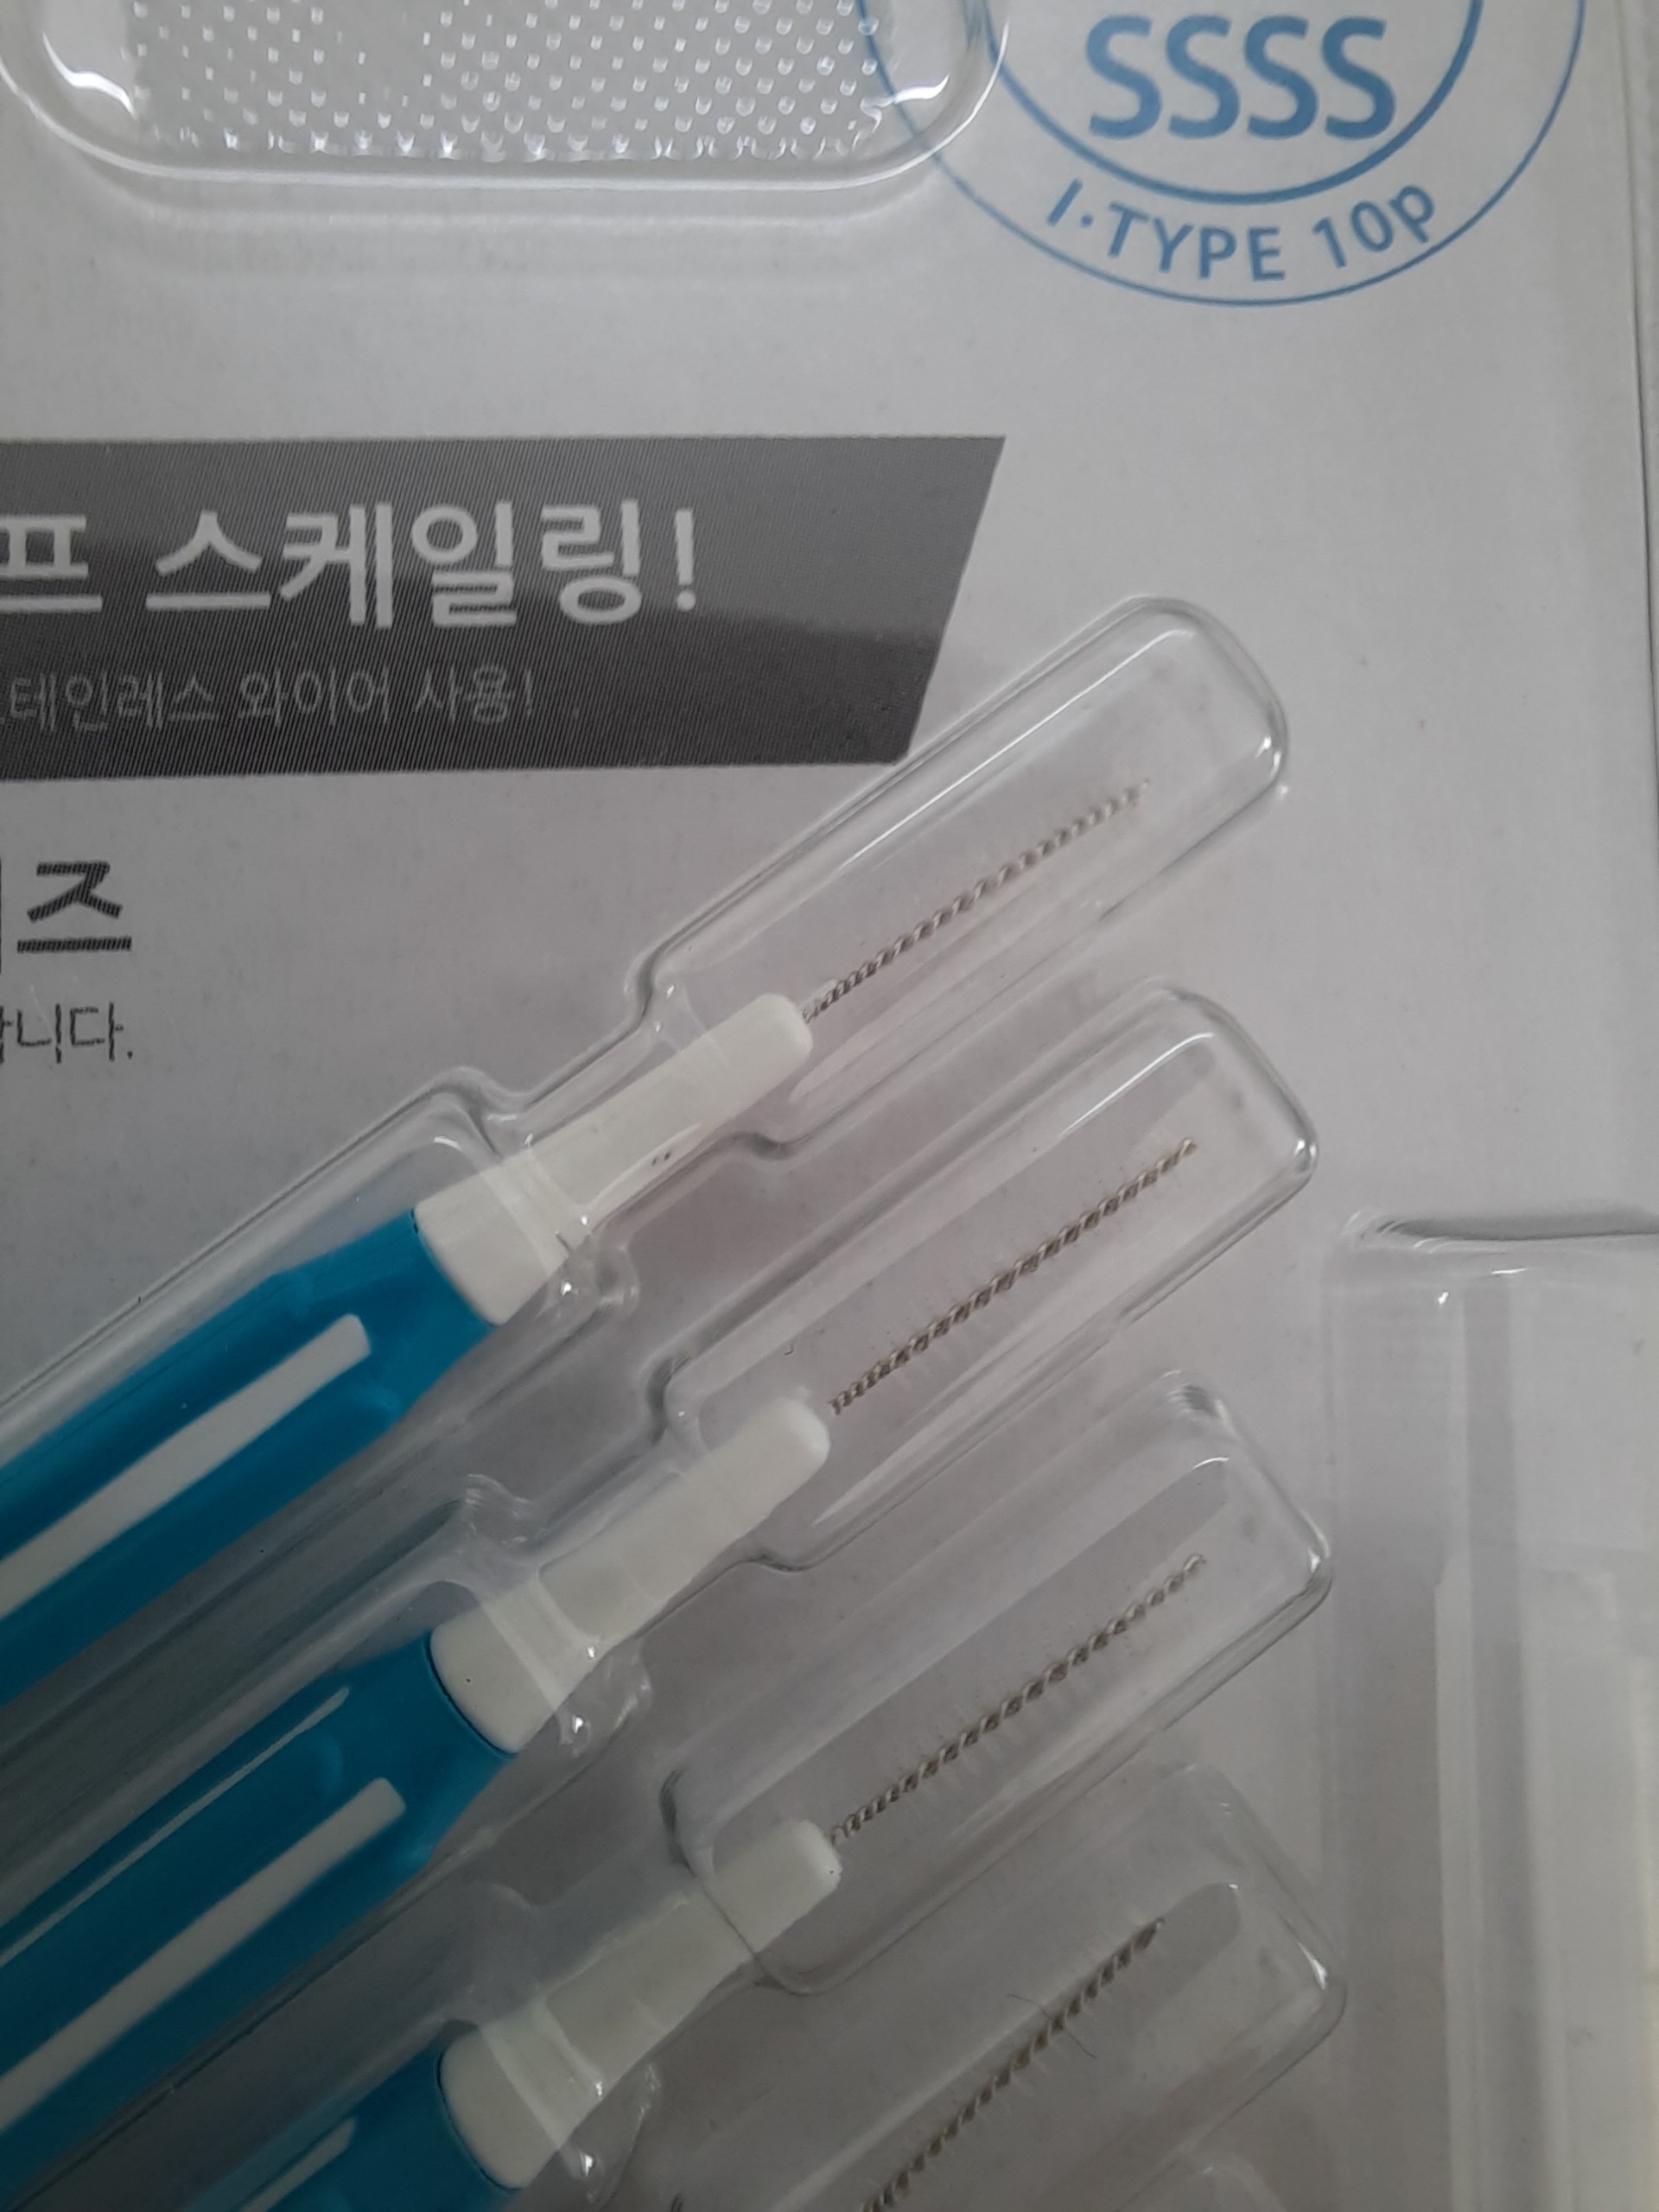 Bàn chải kẽ răng SGS loại I 10 cái/vỉ nhập khẩu Hàn Quốc